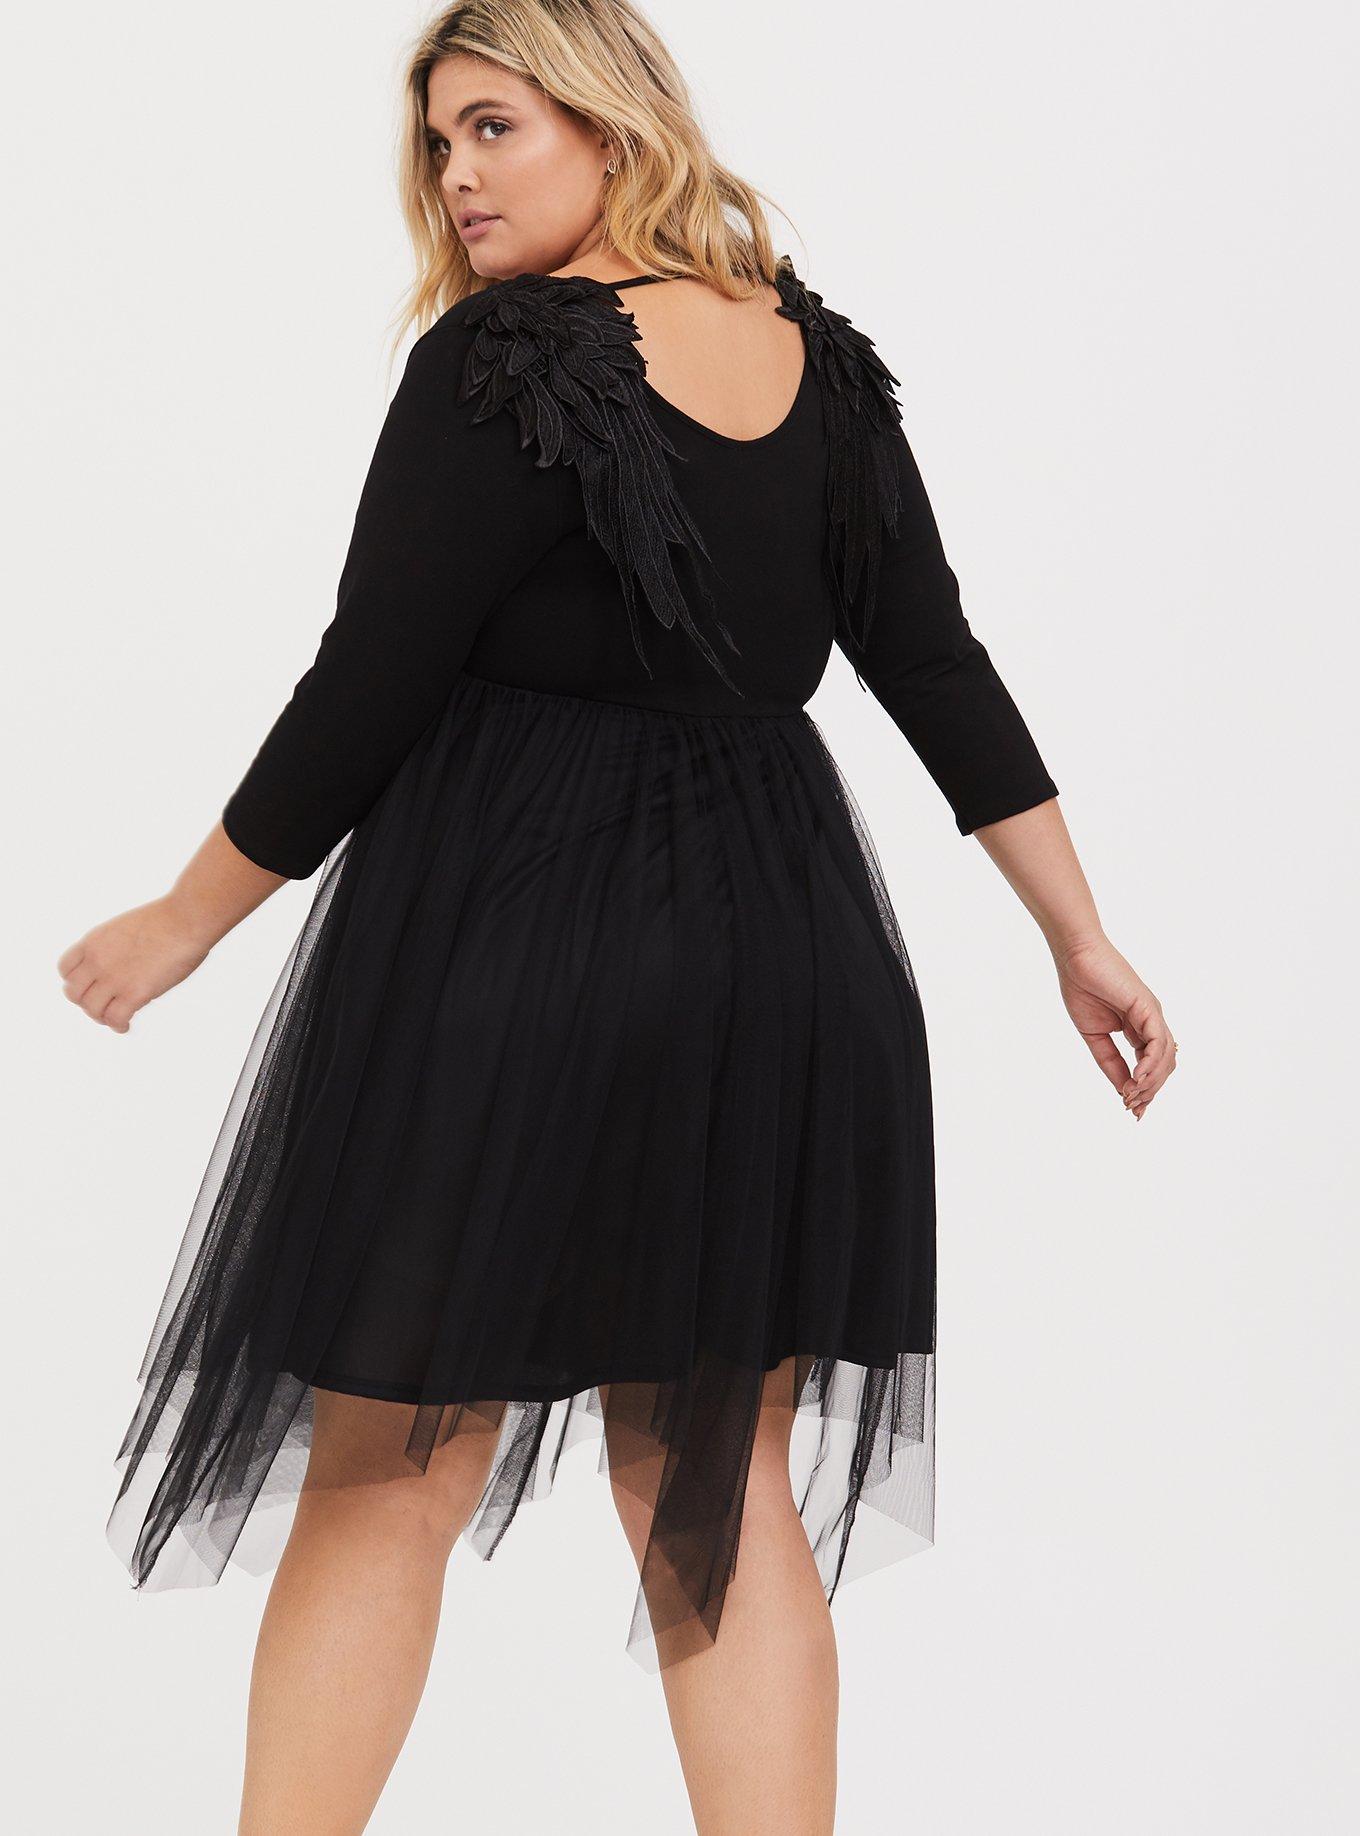 Plus Size - Black Wing Applique Dress - Torrid